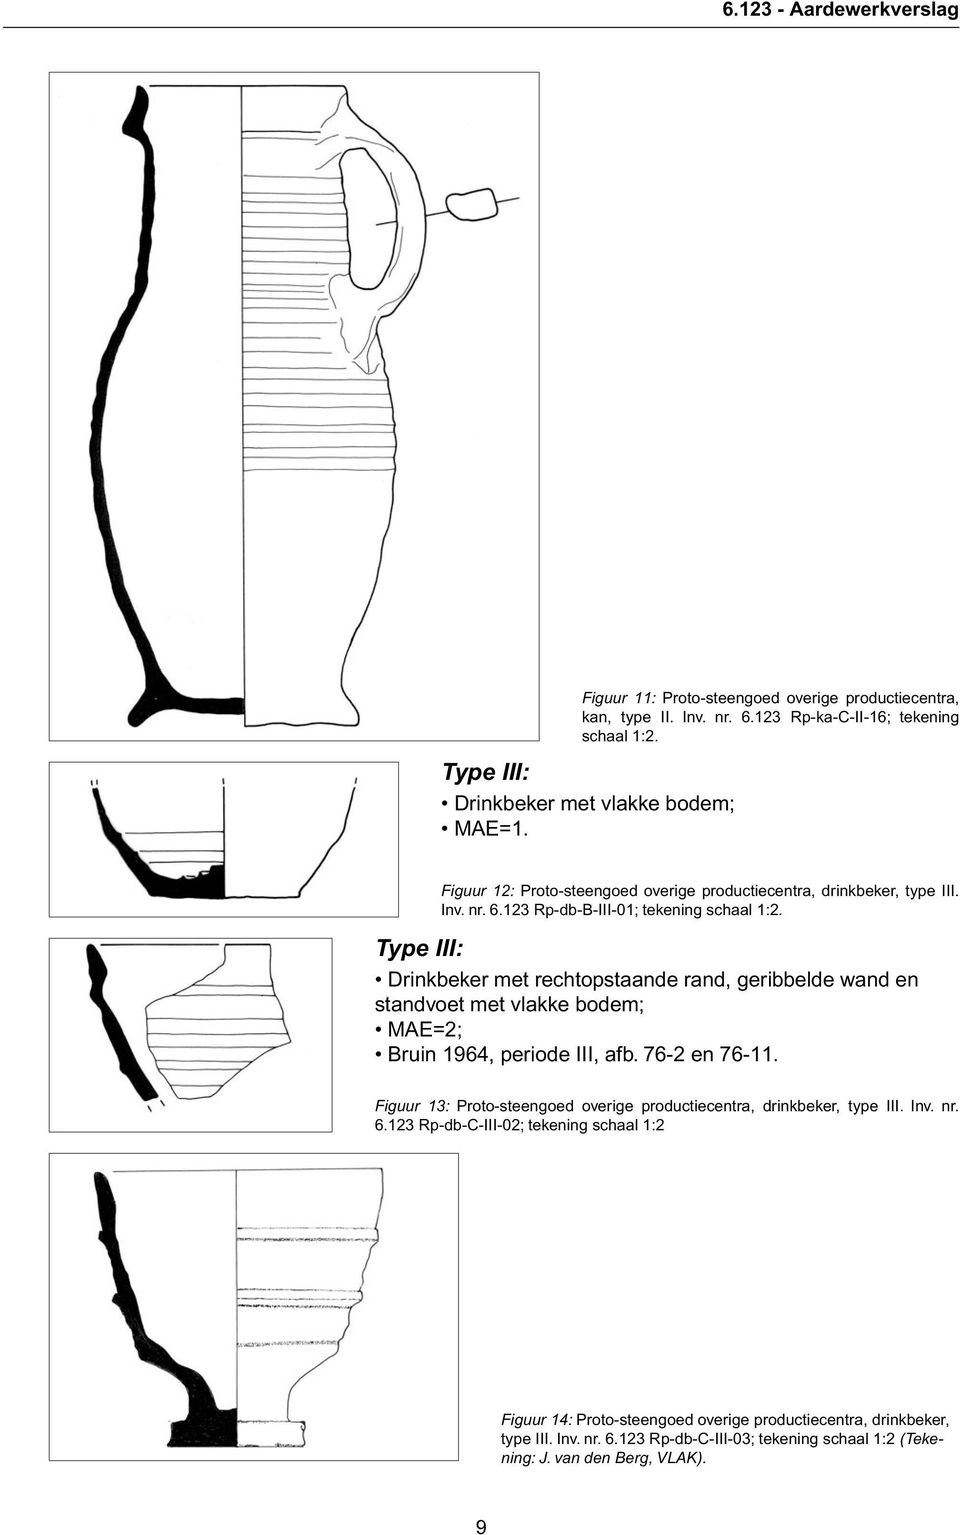 Type III: Drinkbeker met rechtopstaande rand, geribbelde wand en standvoet met vlakke bodem; MAE=2; Bruin 1964, periode III, afb. 76-2 en 76-11.